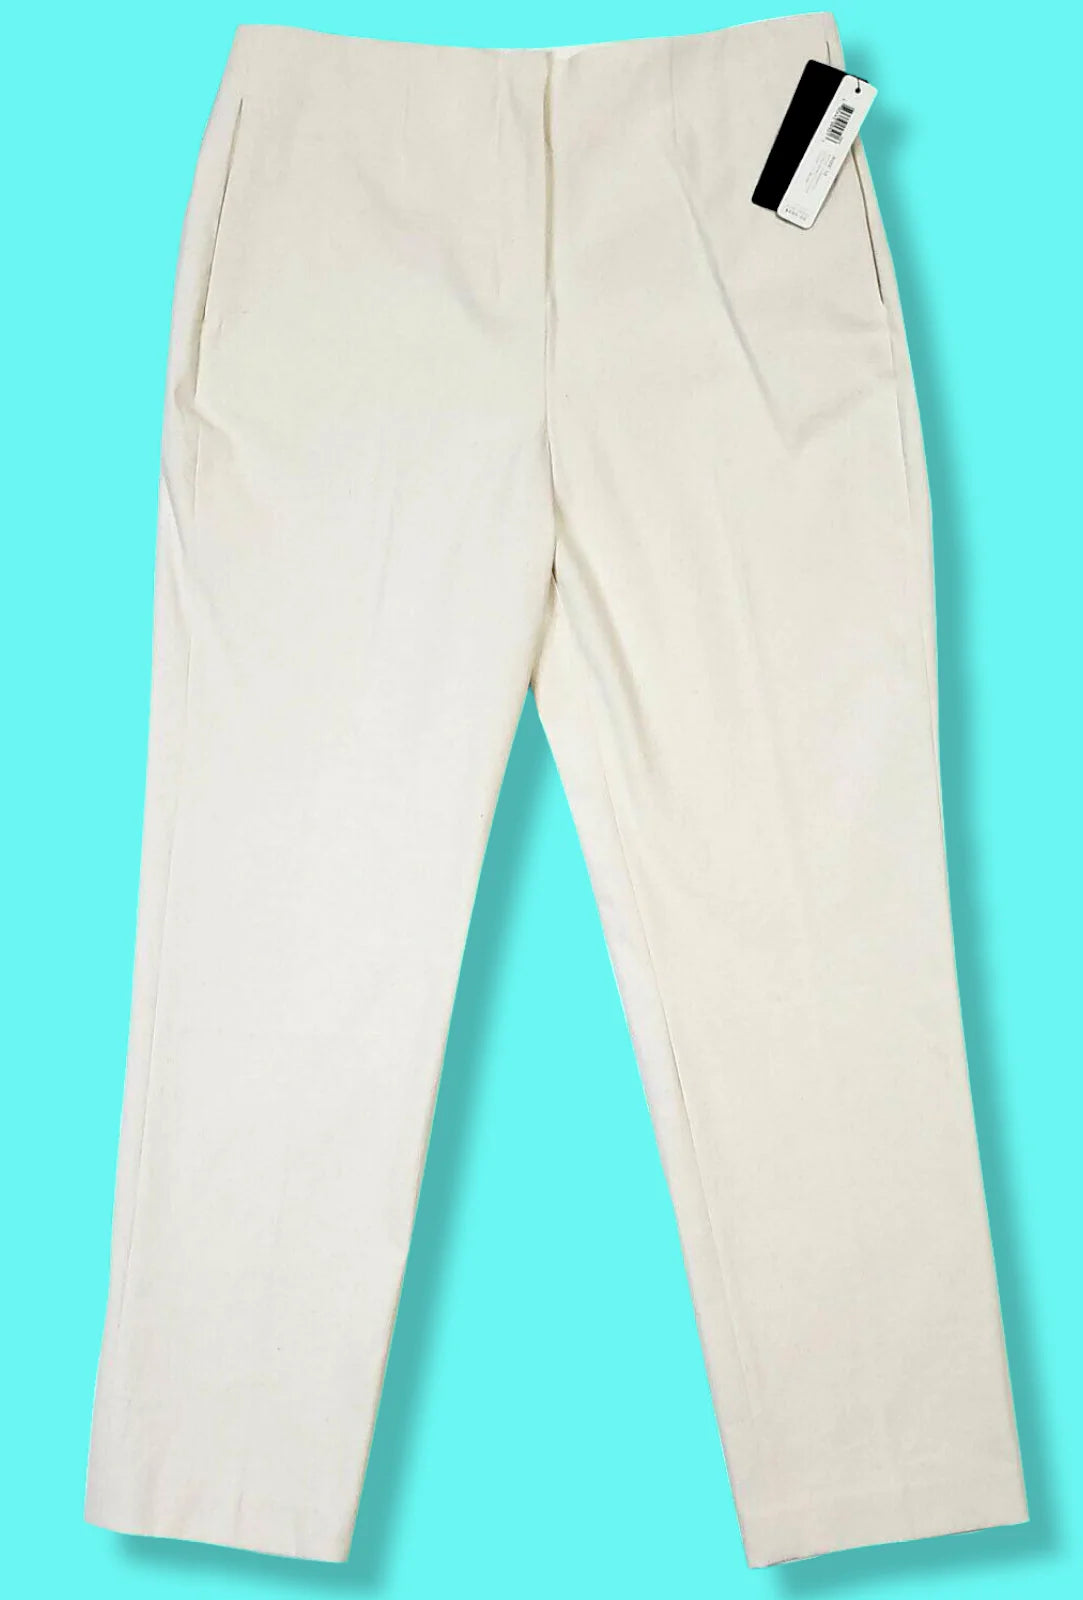 Donna Karan Luxe Ultra Stretch Canvas Cotton Ivory Pants Size 2 - SVNYFancy